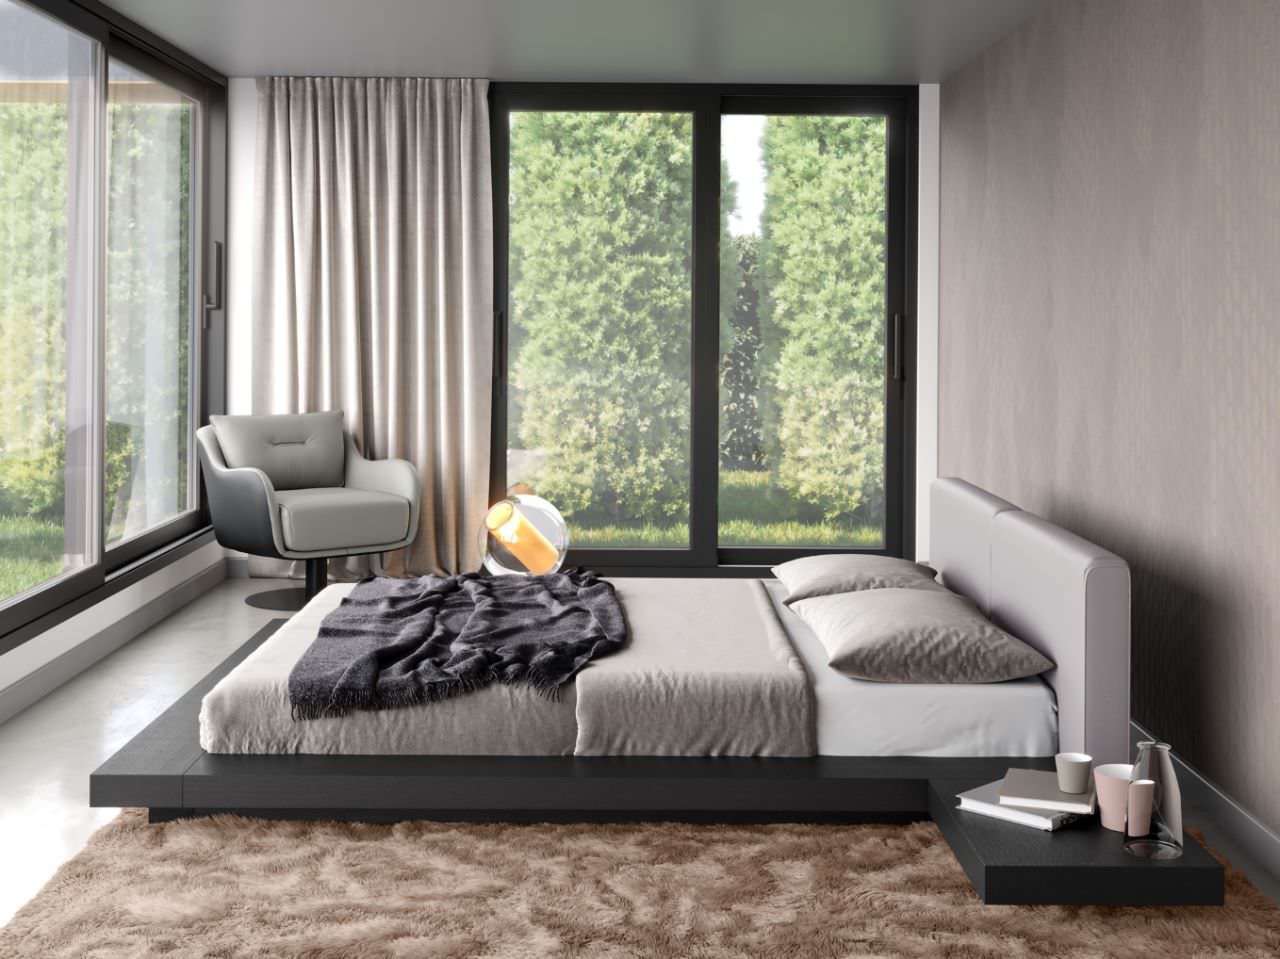 Trang trí phòng ngủ nhỏ kiểu Nhật hiện đại với gam màu xám